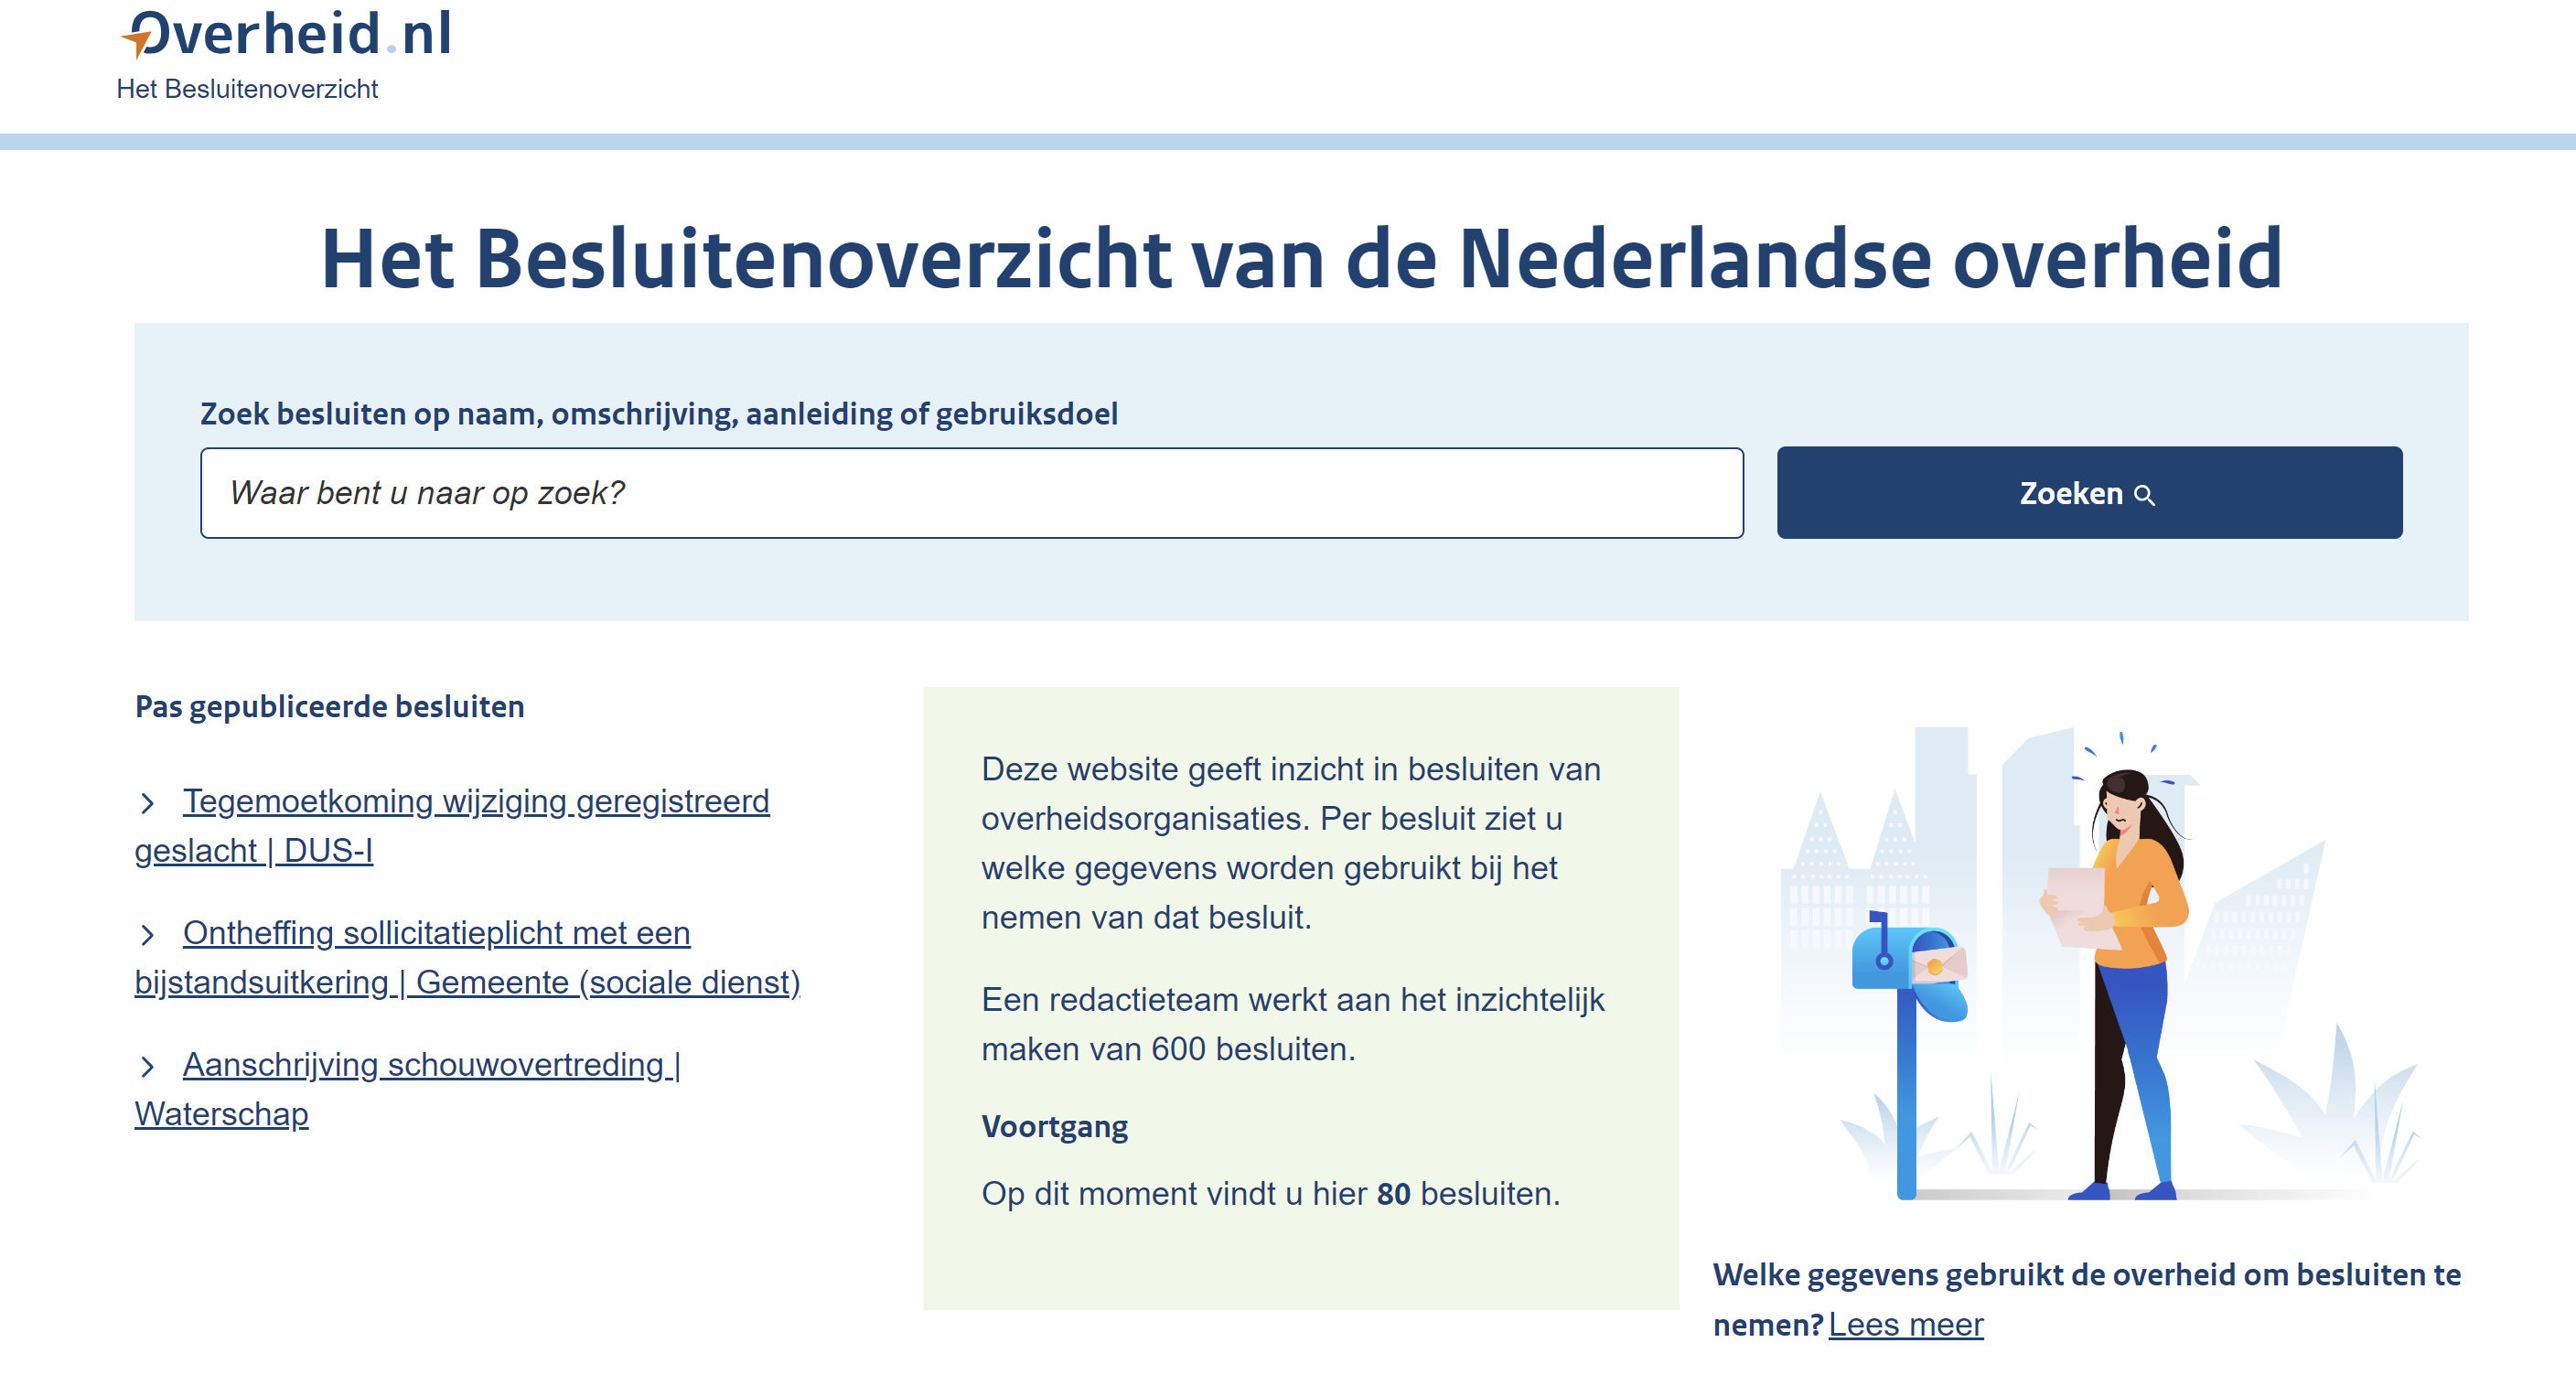 Homepage van de website wiegebruiktmijngegevens.nl